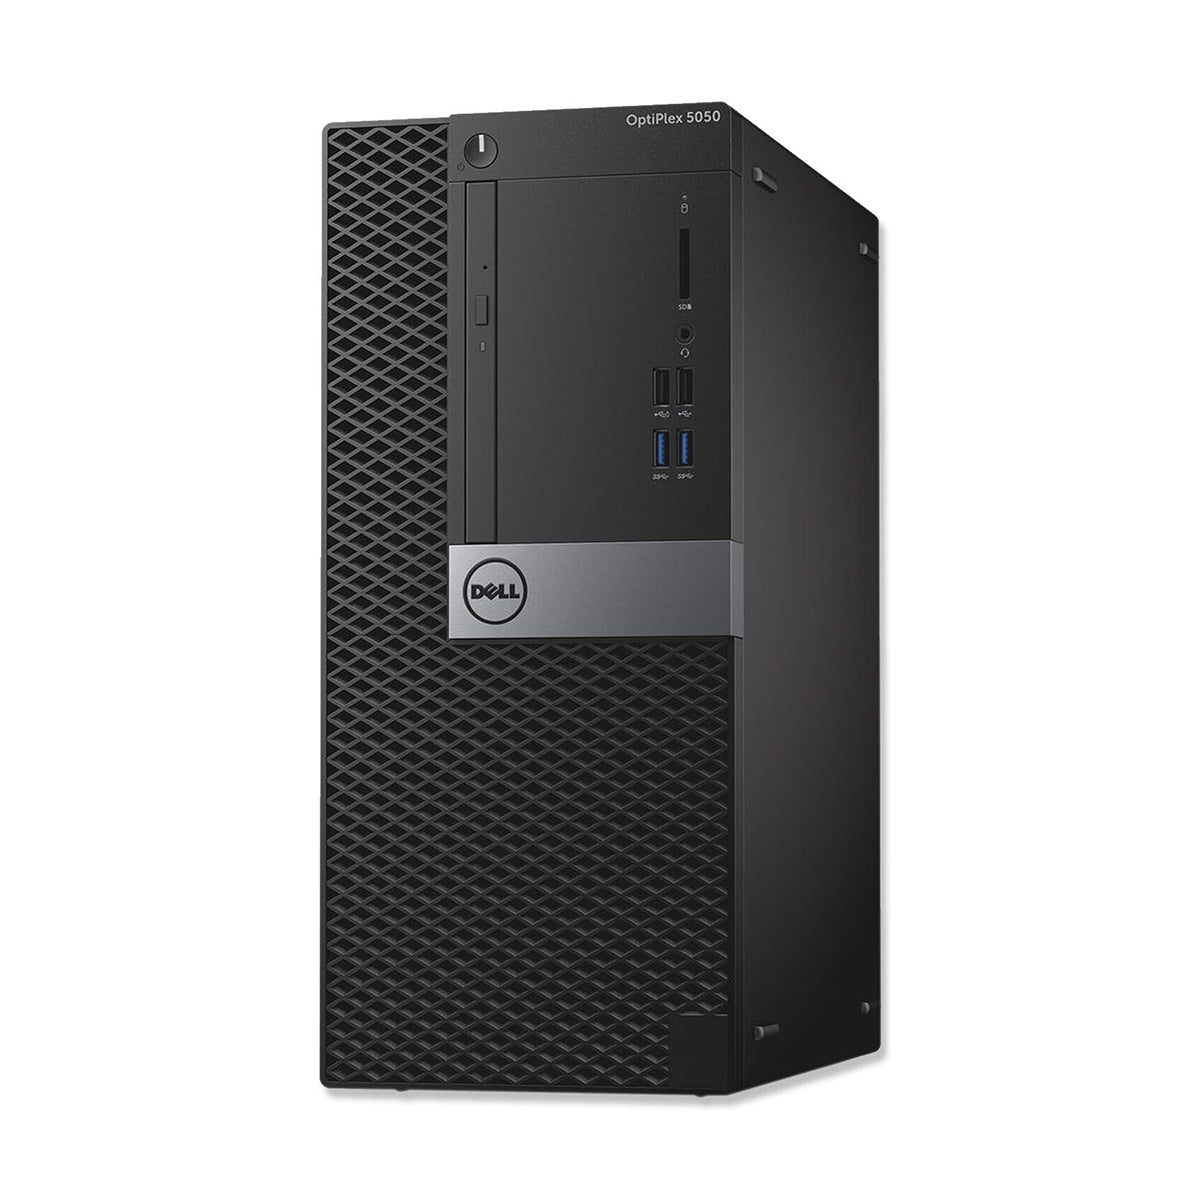 Dell Optiplex 5050 Core i5-6500 Desktop Computer Offers (New OB)